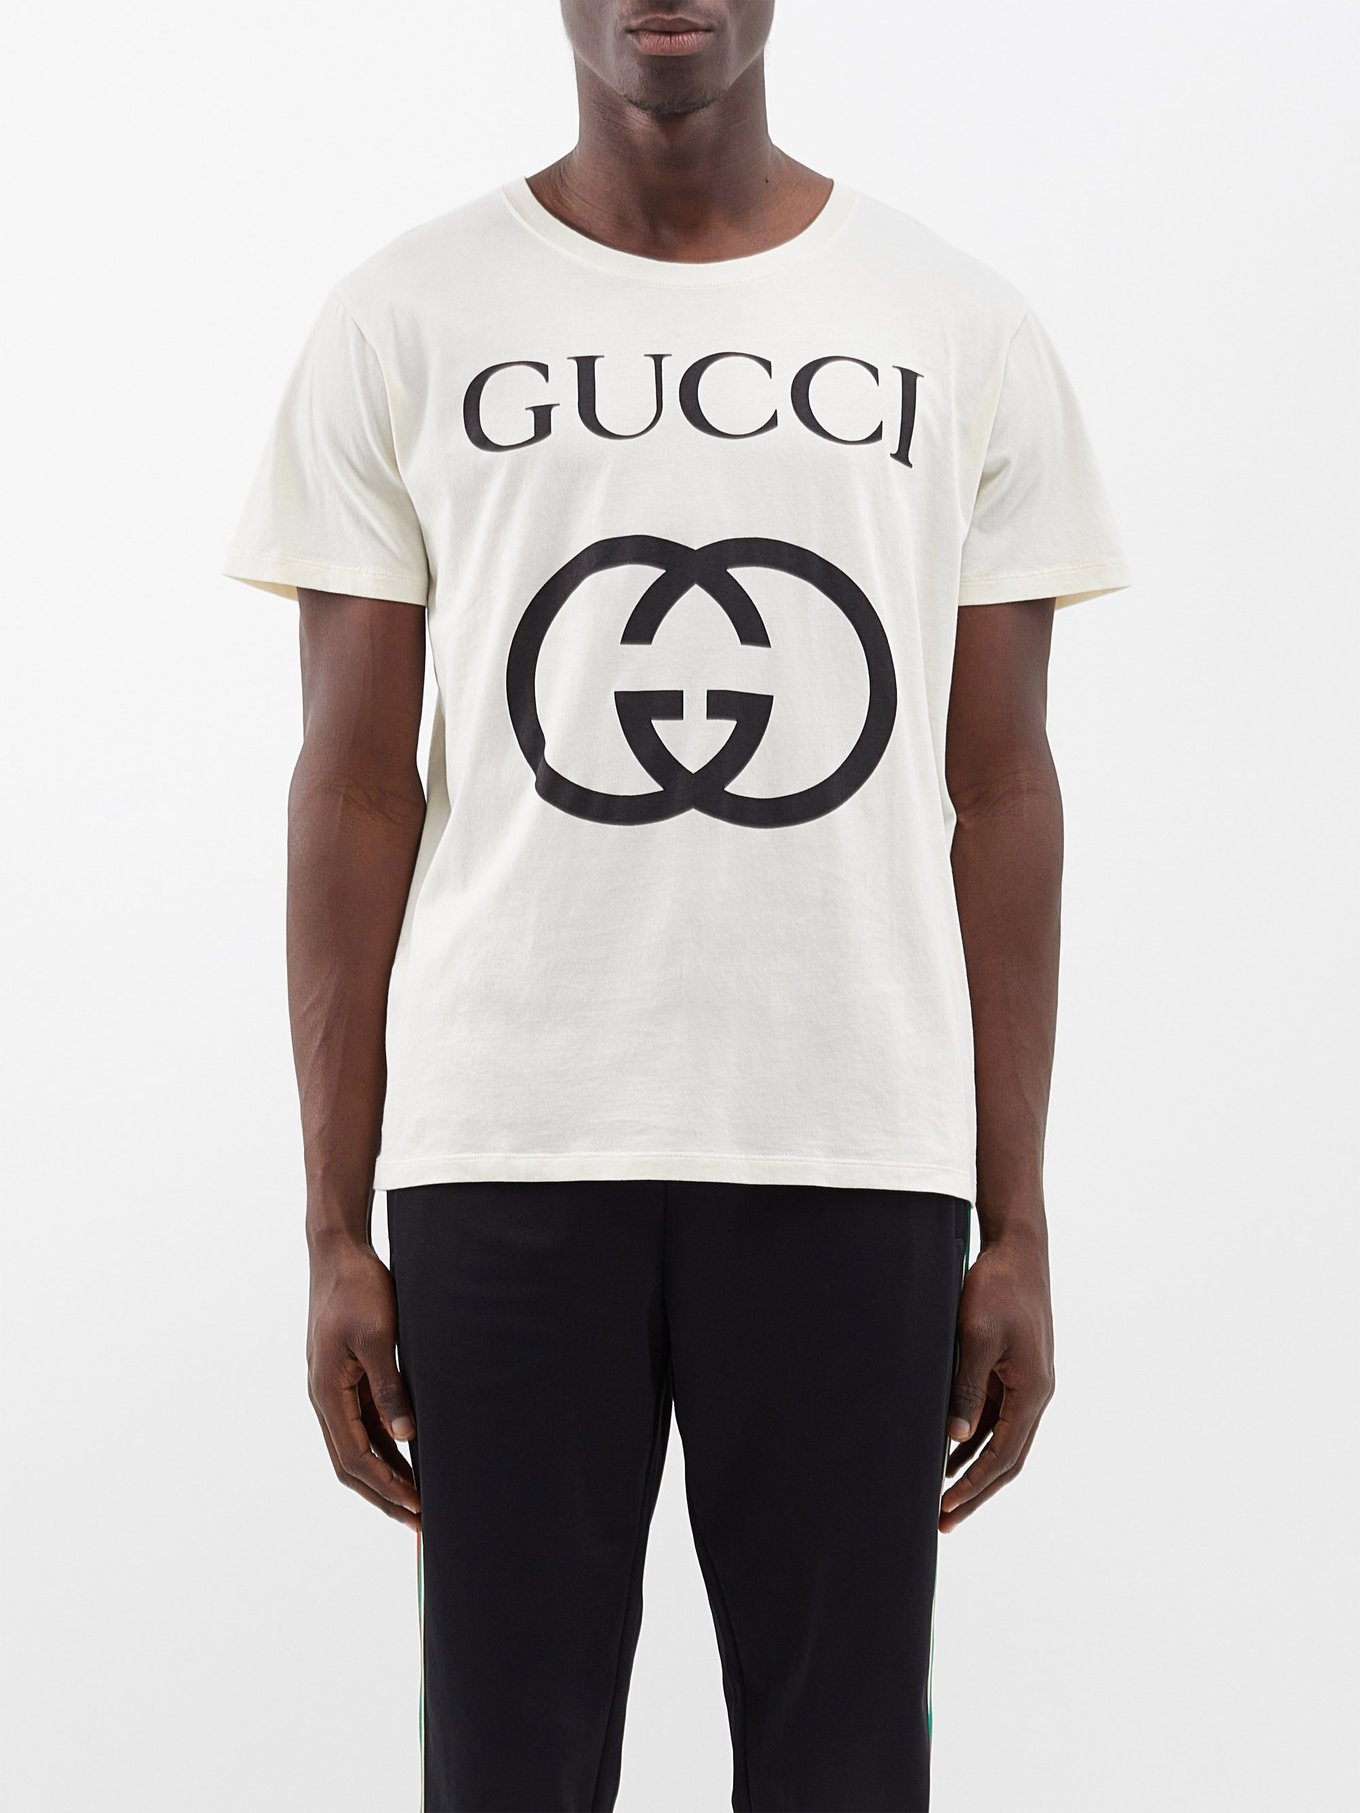 Beige Gucci t shirt men Size 44 (Large)